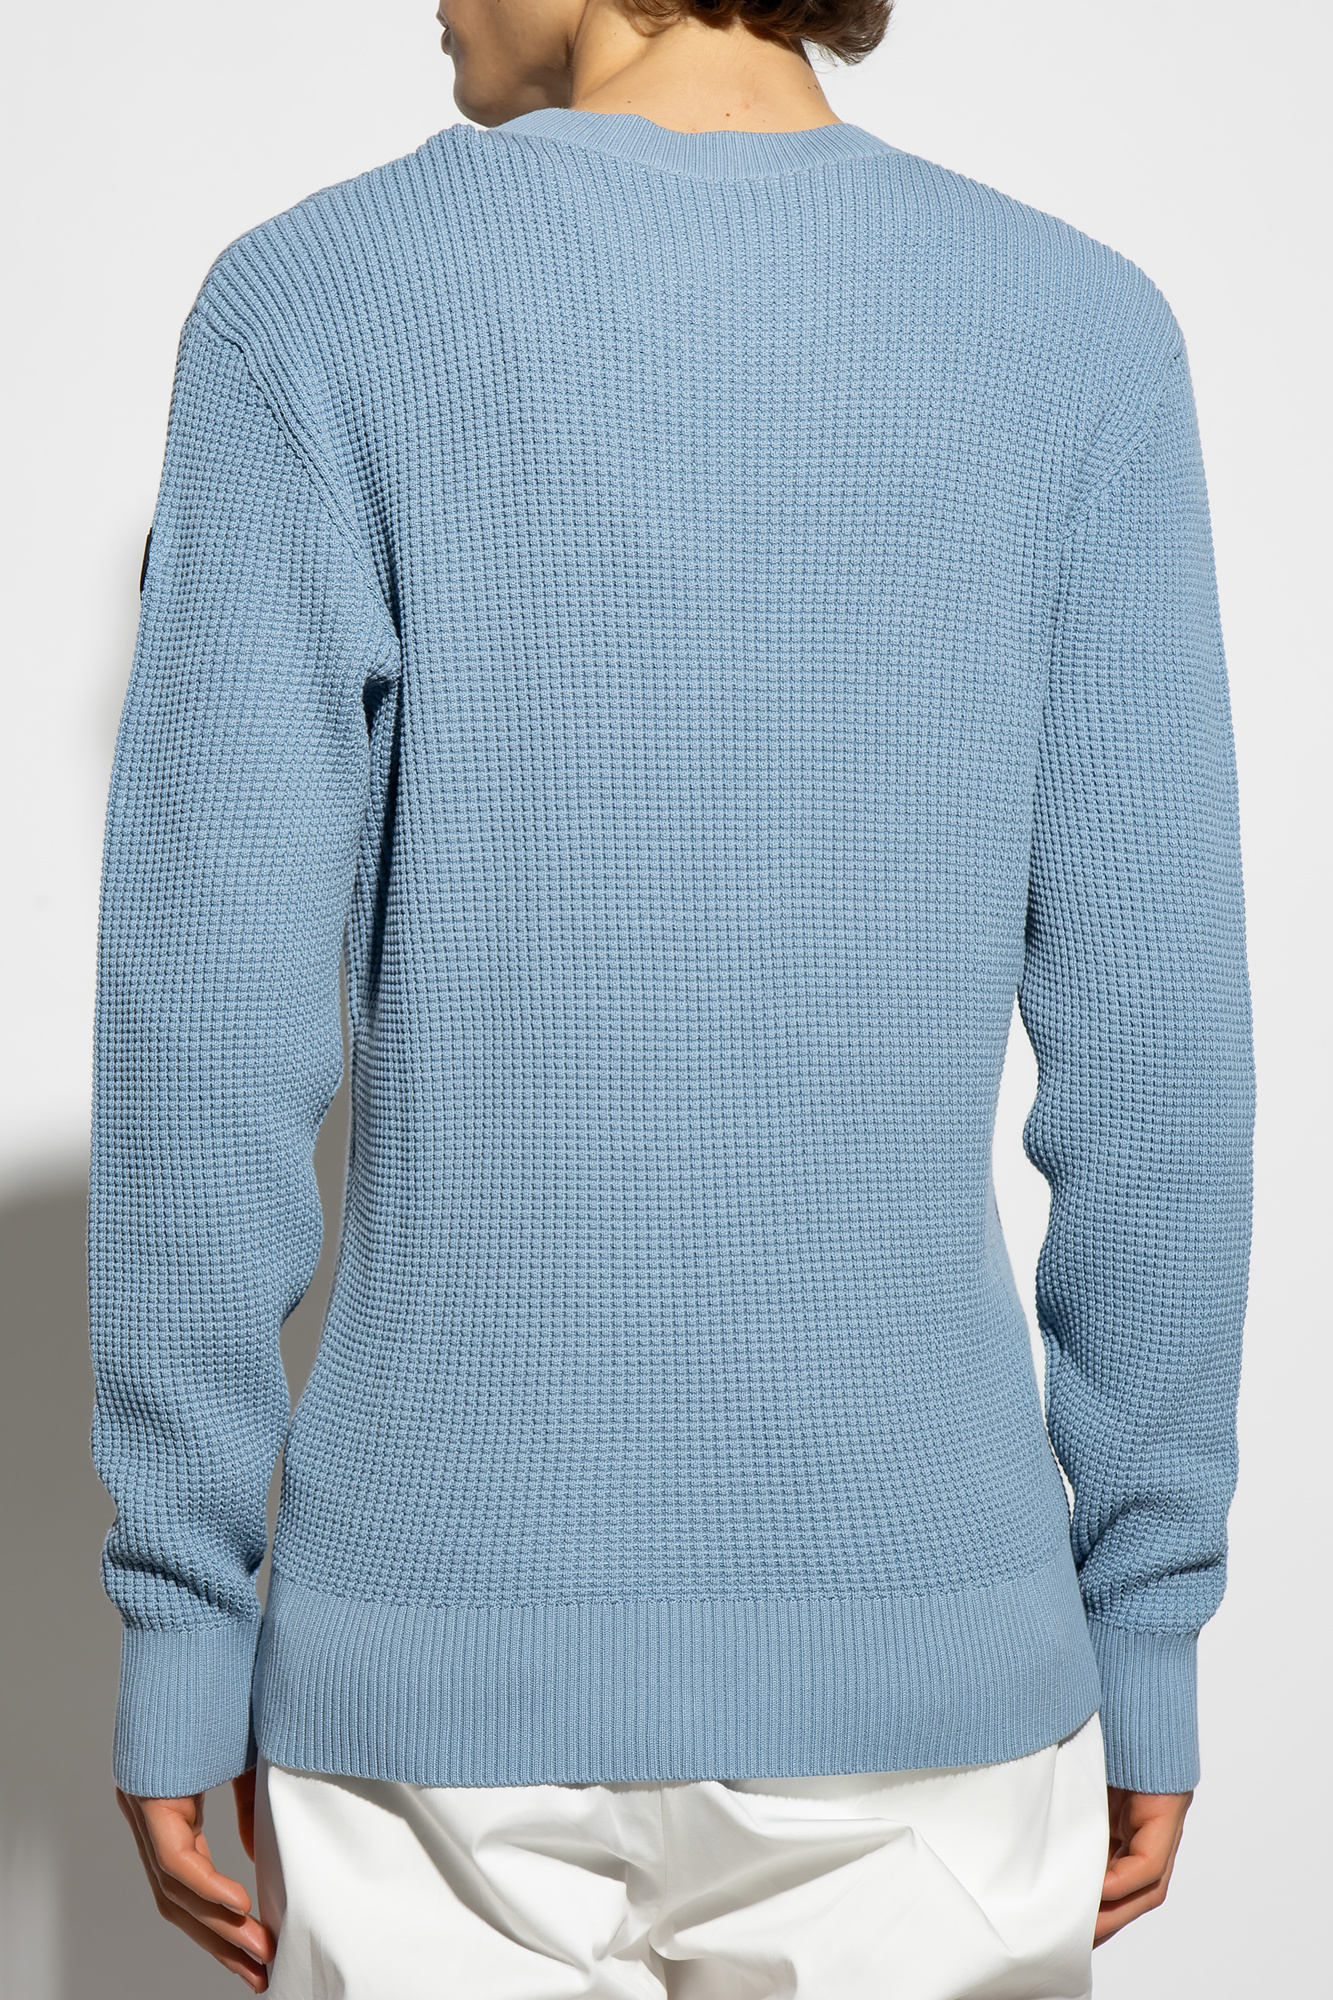 Moncler Sweatshirt com capucho Under Armour ColdGear azul marinho mulher